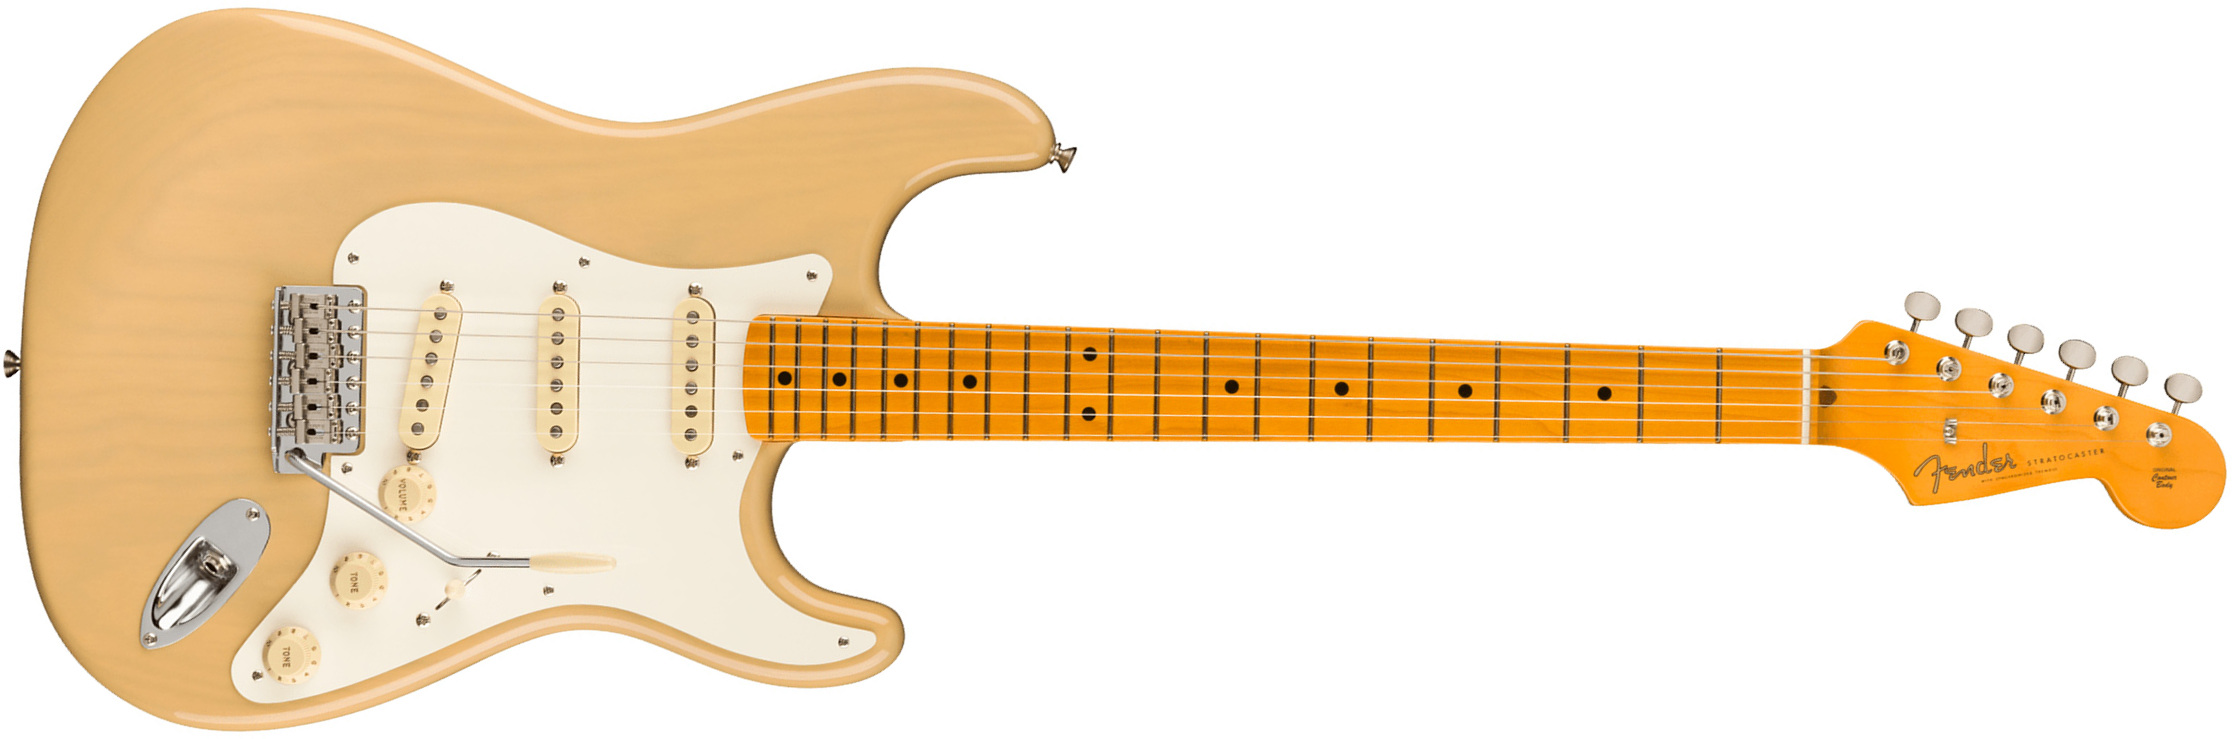 Fender Strat 1957 American Vintage Ii Usa 3s Trem Mn - Vintage Blonde - Guitare Électrique Forme Str - Main picture